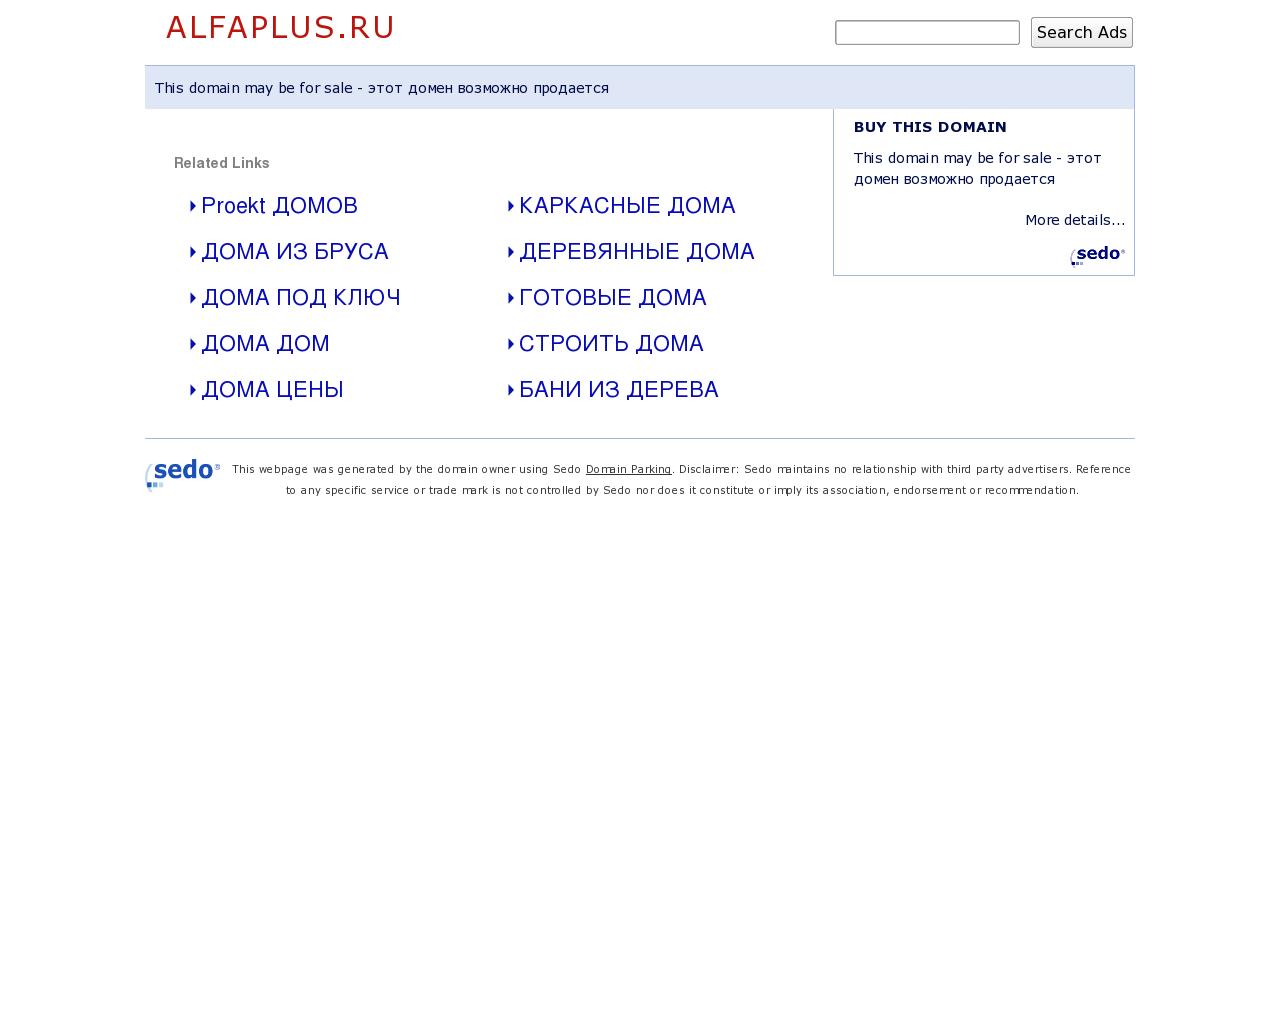 Изображение сайта alfaplus.ru в разрешении 1280x1024